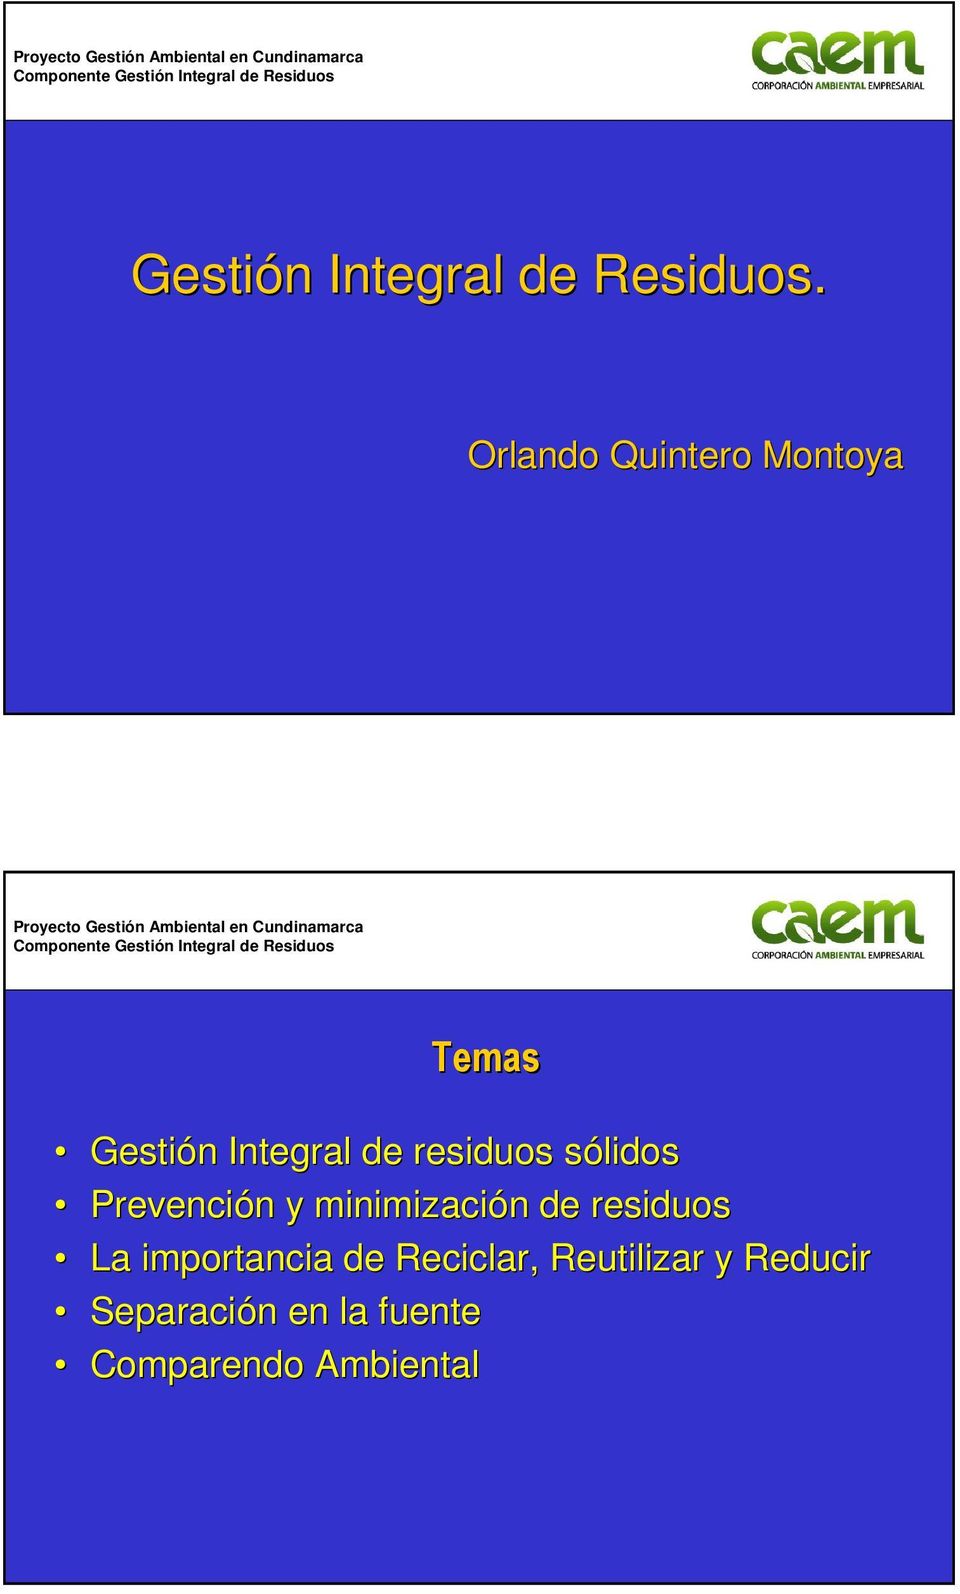 Orlando Quintero Montoya  competitivo para el sector empresarial Temas Gestión n Integral de residuos sólidoss Prevención n y minimización n de residuos La